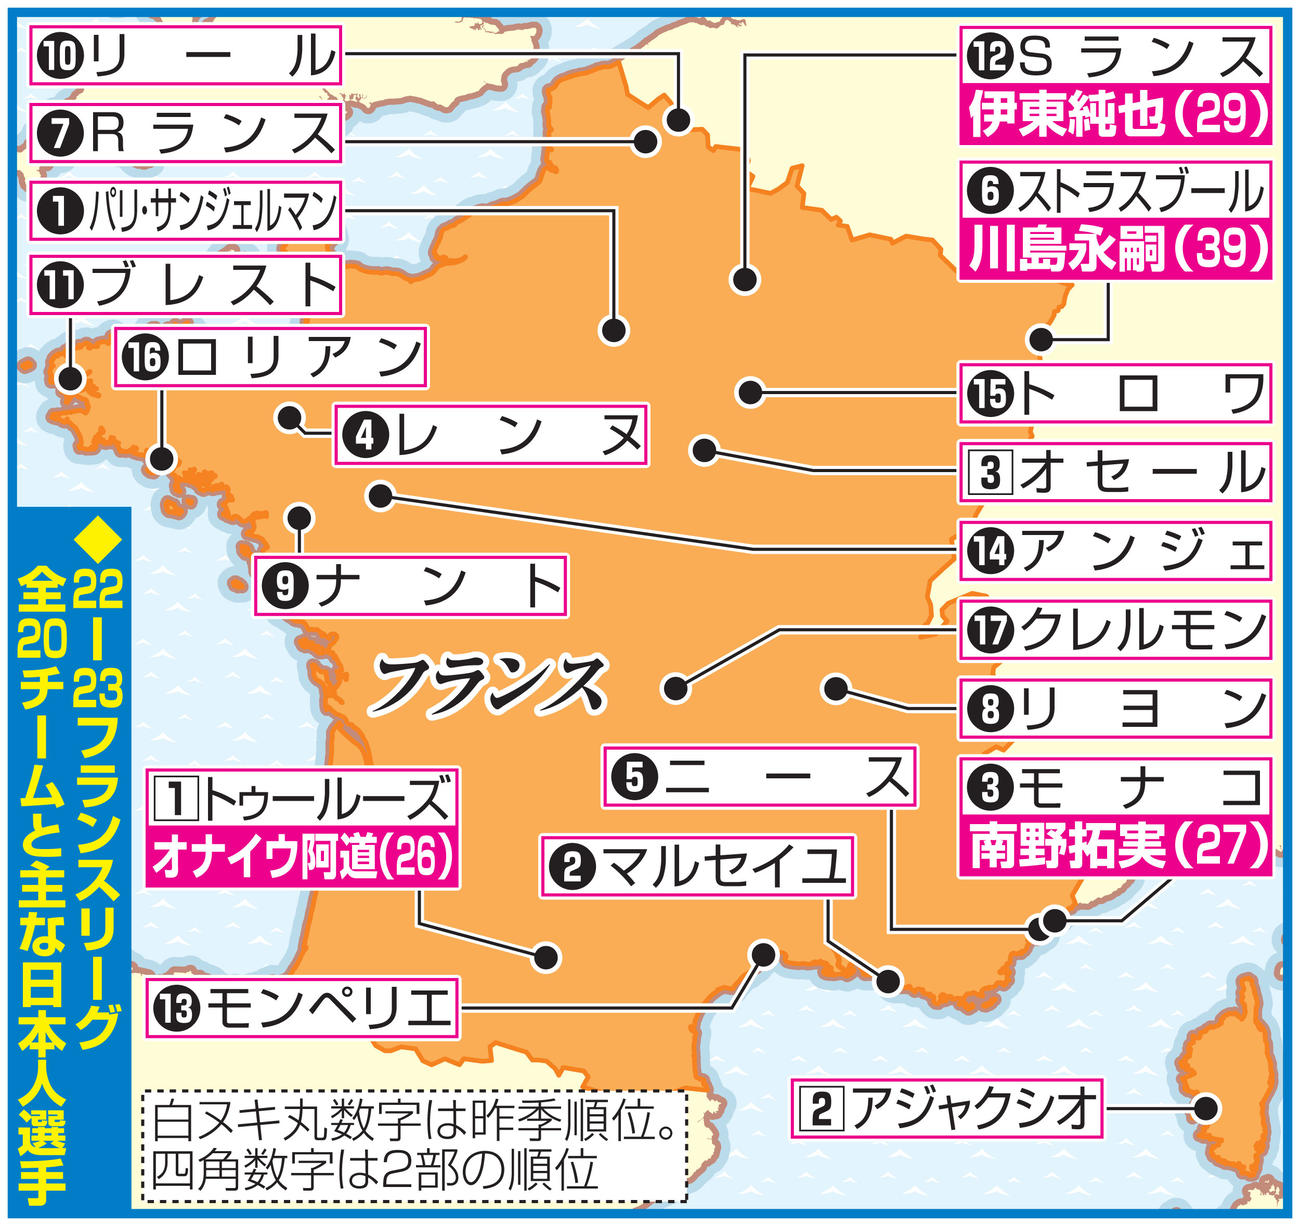 【イラストマップ】22-23フランスリーグ全20チームと主な日本人選手